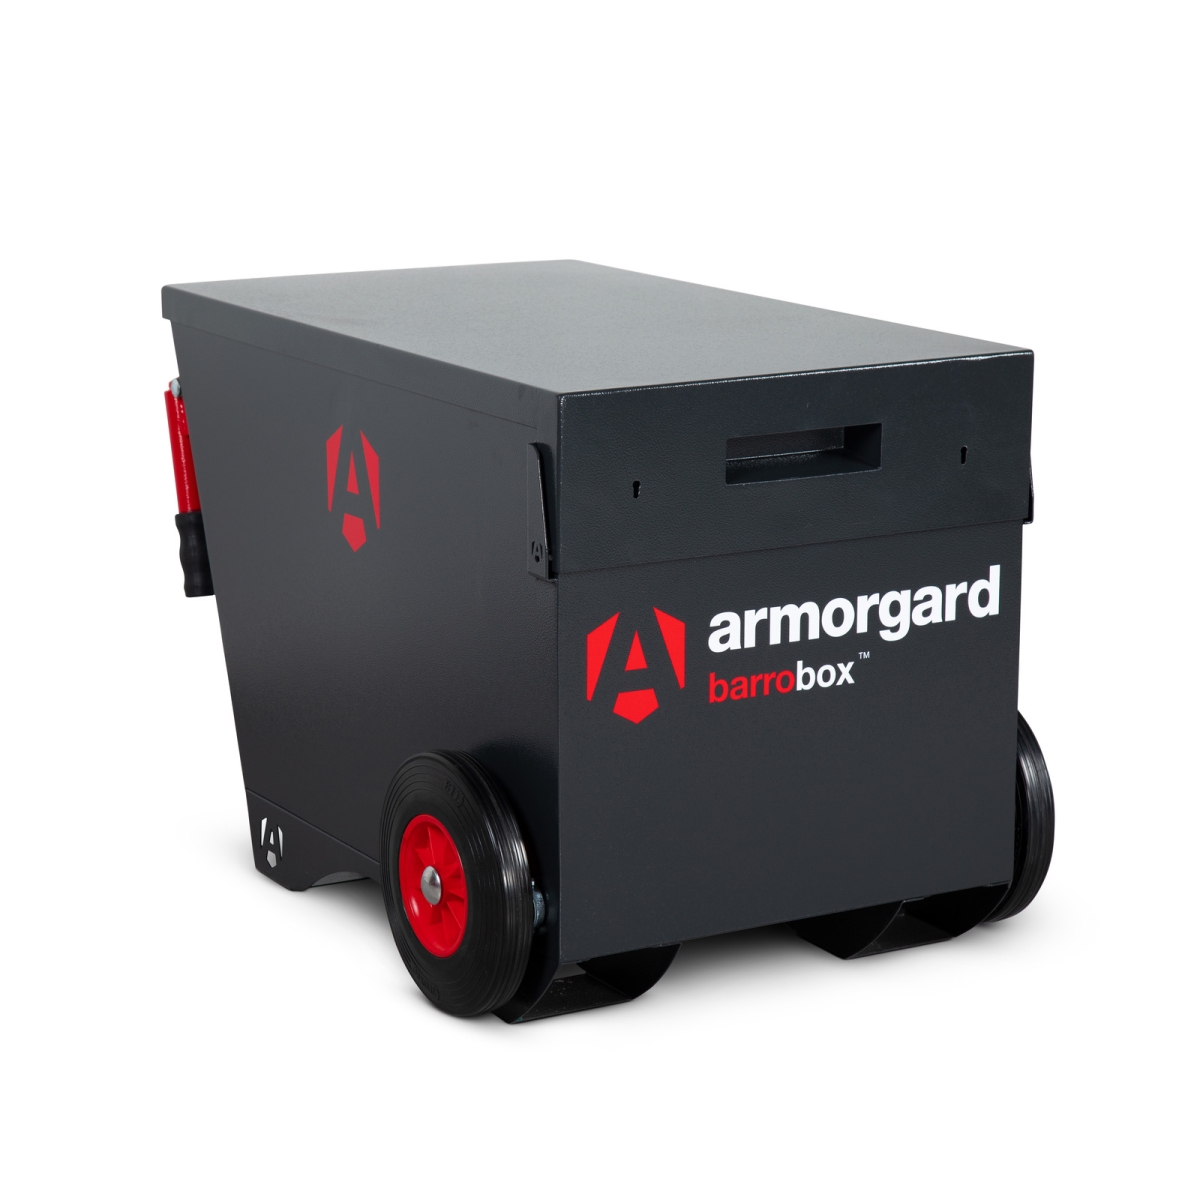 Armorgard BarroBox Mobile Site Security Box